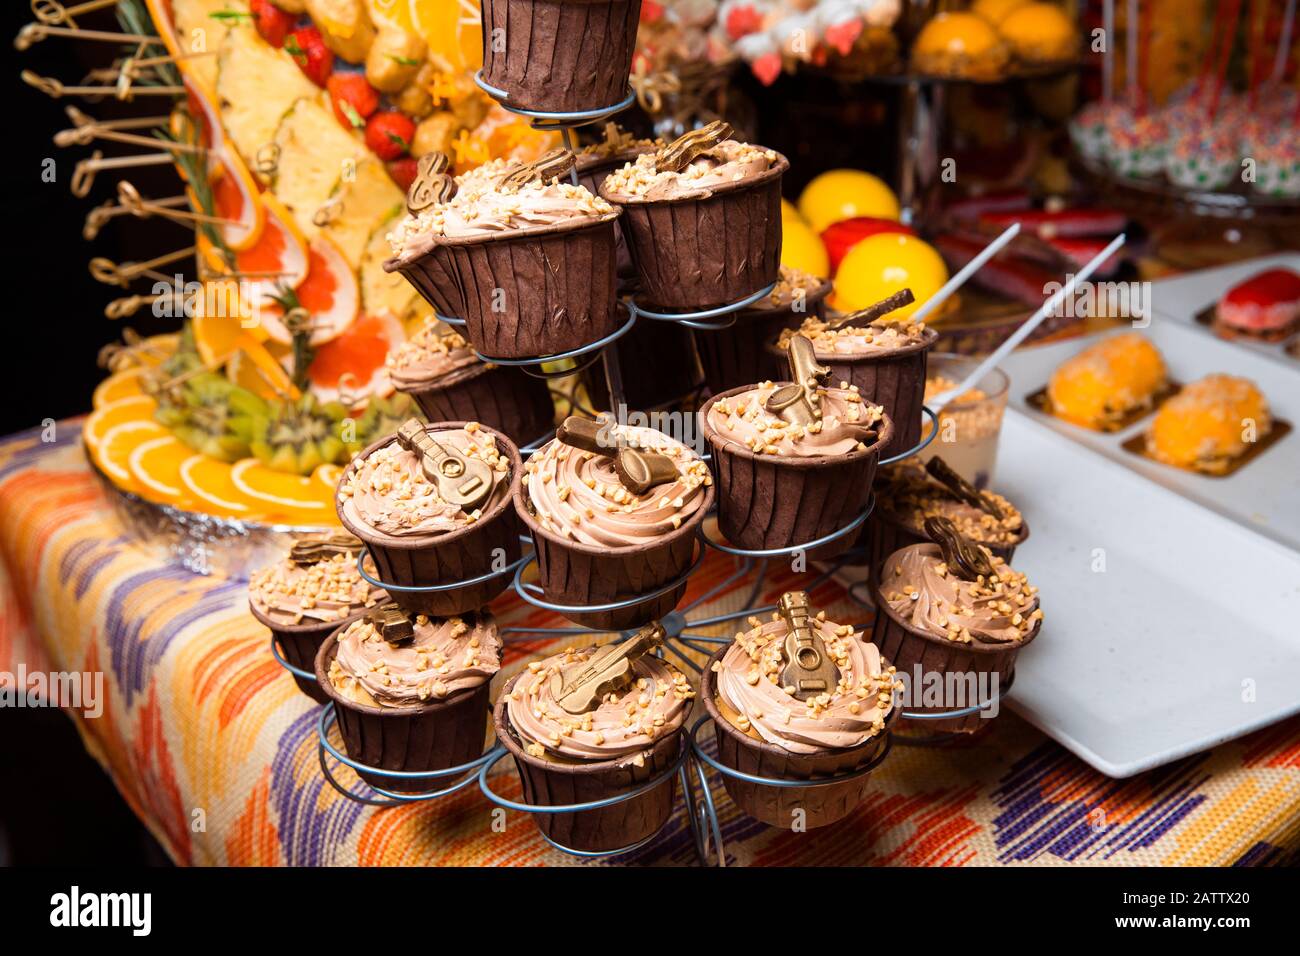 Frisch zubereitete Schokoladenkuchen, mit Sahne und Kugeln verziert, stehen auf einem Ständer. Urlaubsatmosphäre, köstliches Dessert. Süßwarenbar. Stockfoto